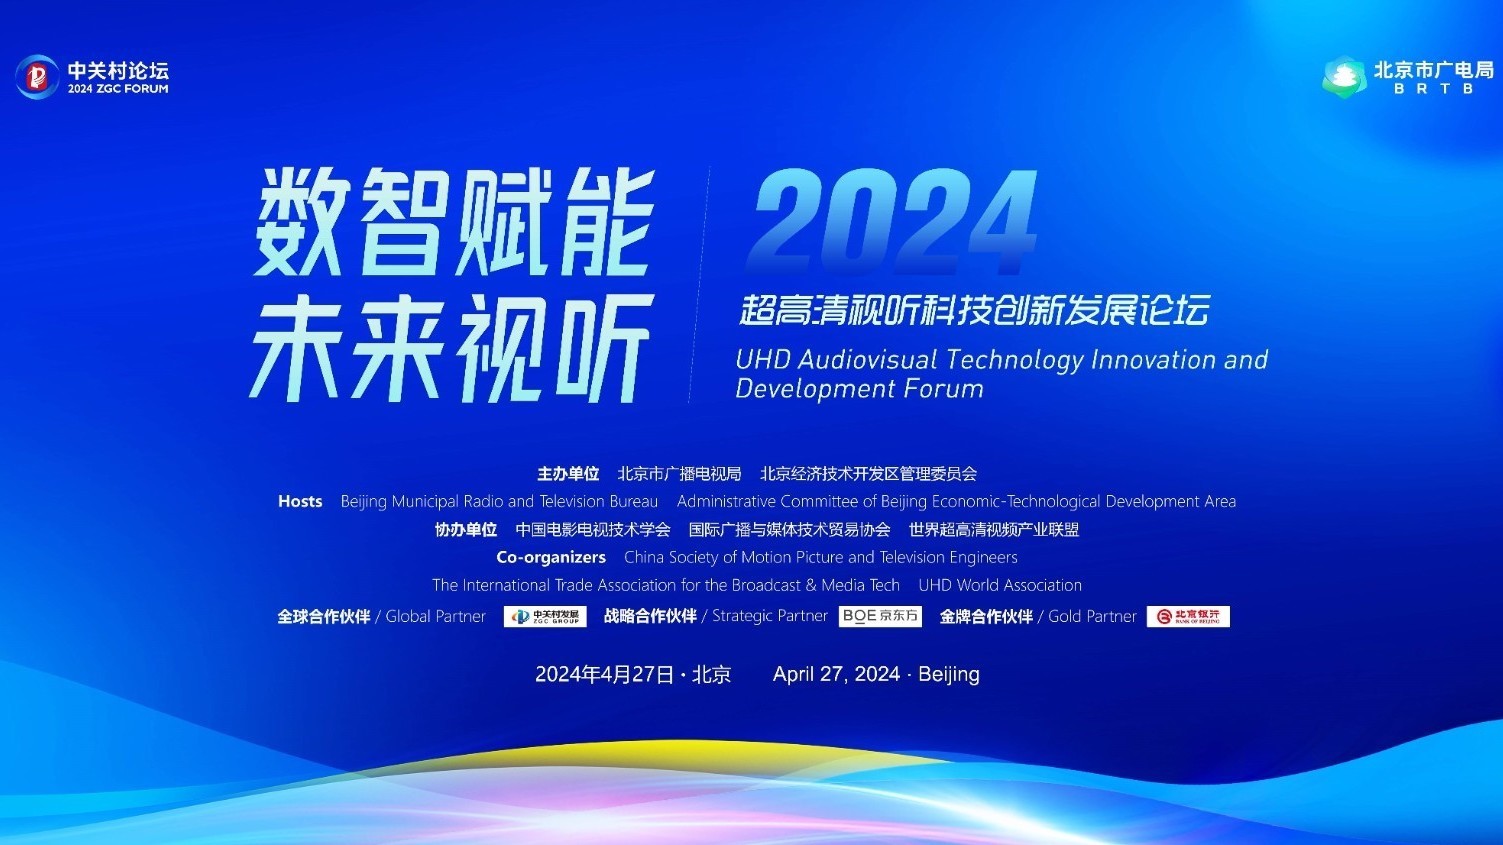 2024中关村论坛年会｜超高清视听科技创新发展论坛将于4月27日举办